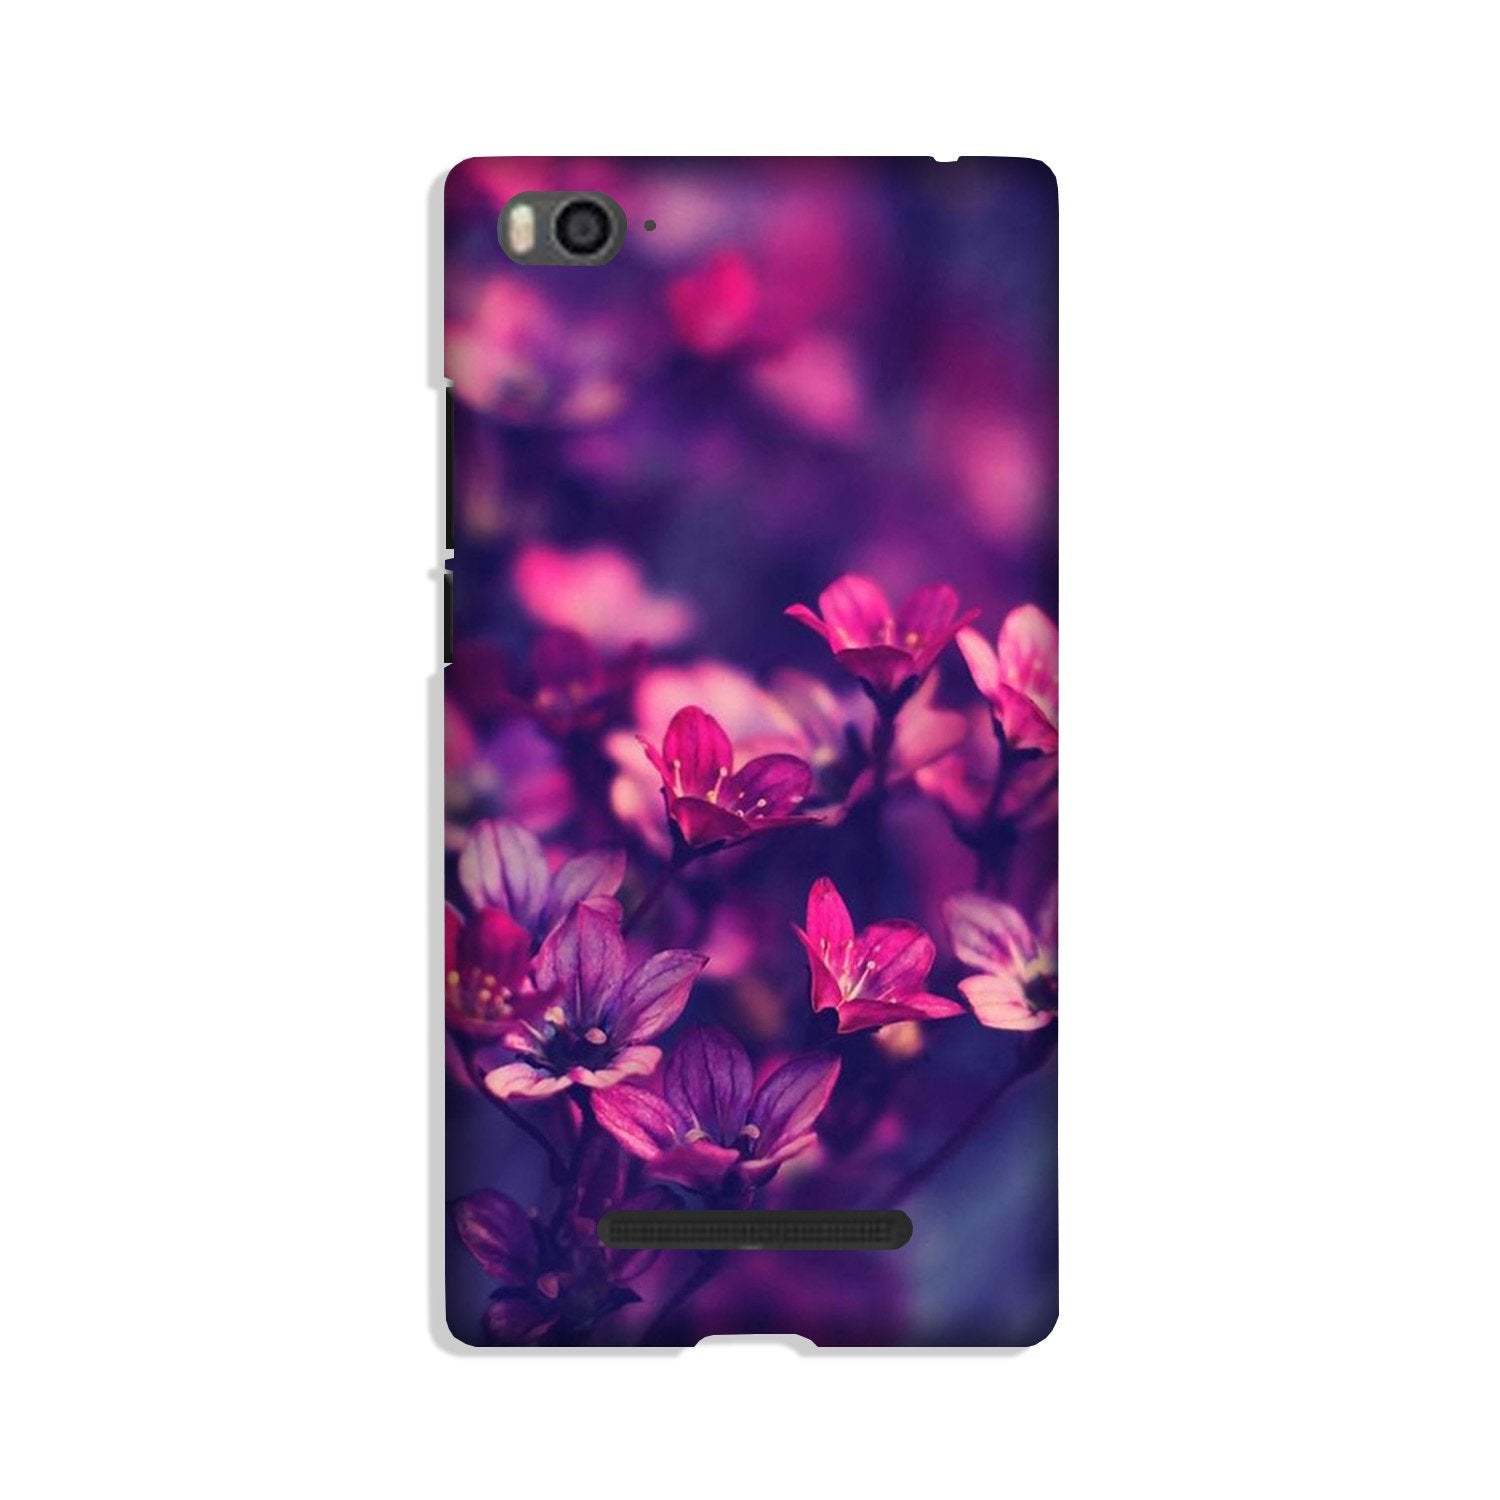 flowers Case for Xiaomi Mi 4i